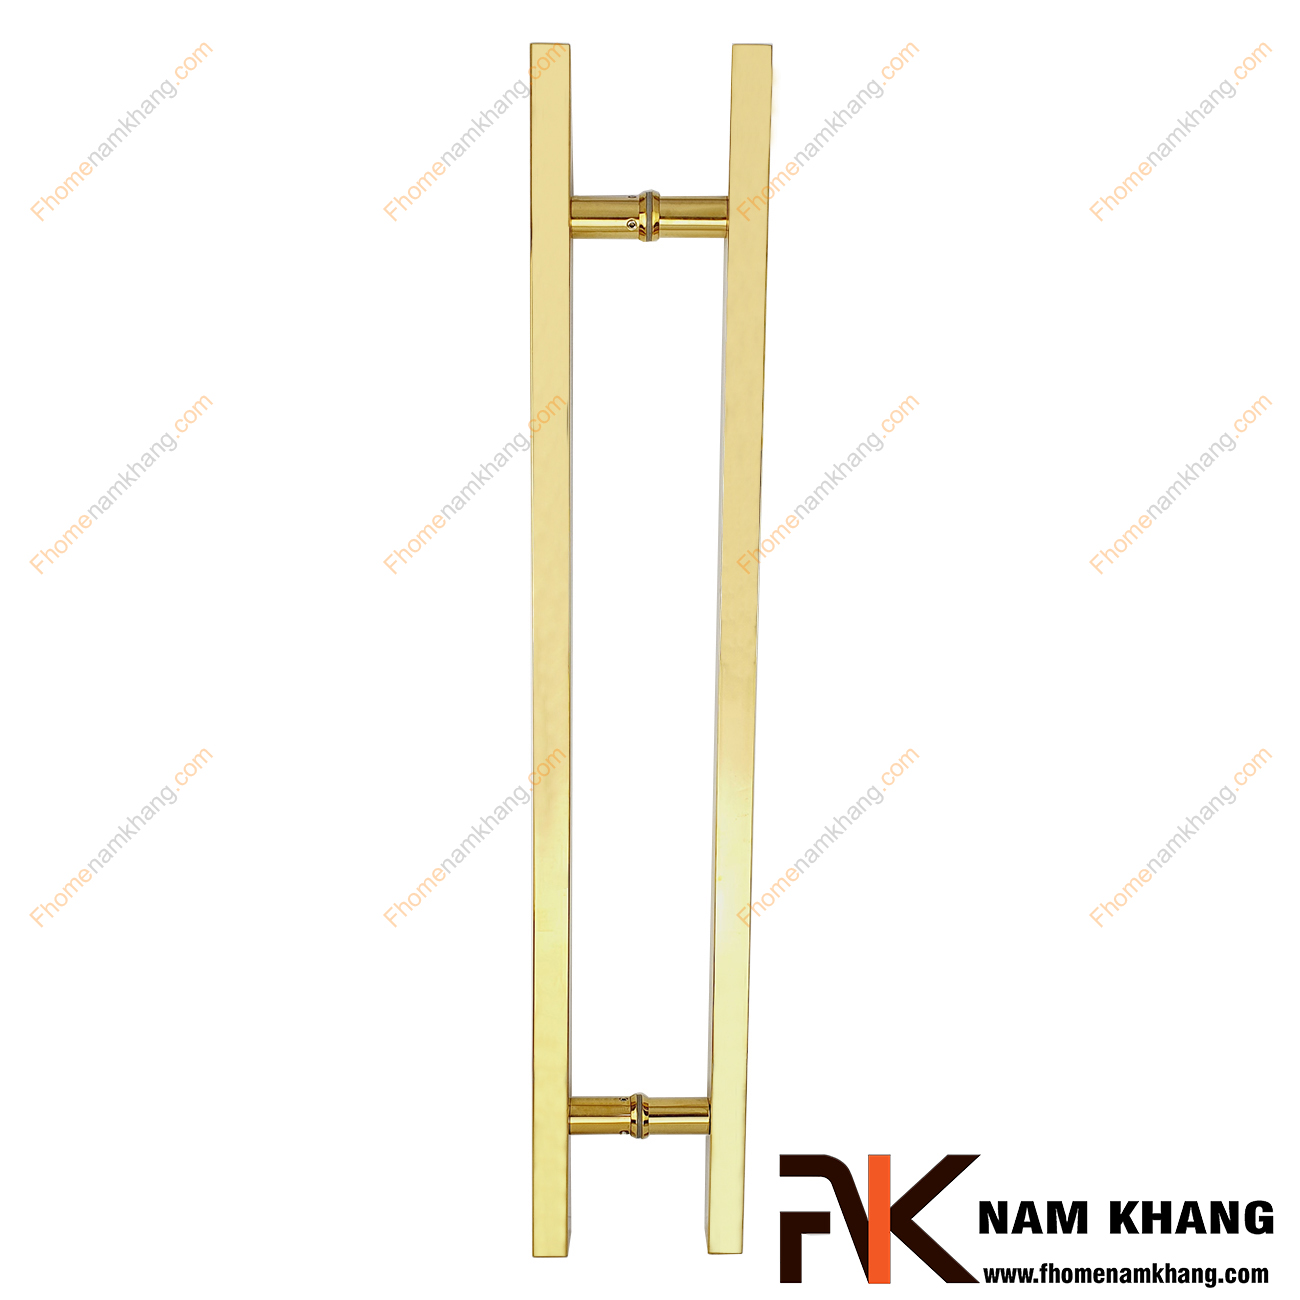 Tay nắm cửa chính màu vàng bóng dạng thanh vuông trơn NK900-V304 cao cấp sử dụng cho mọi loại cửa với nhiều chất liệu từ gỗ, kính, nhôm,...